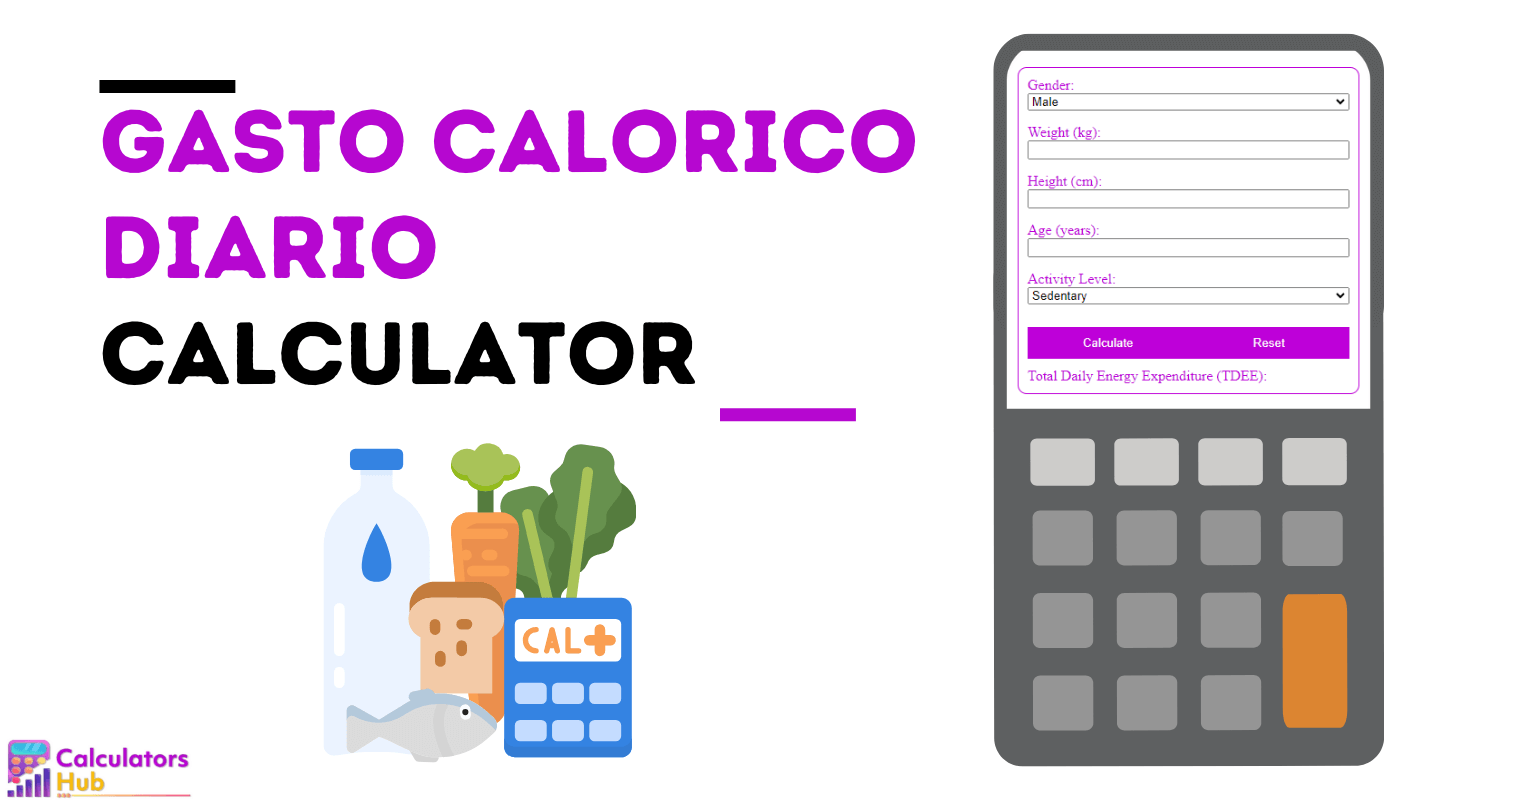 Gasto Calorico Diario Calculator